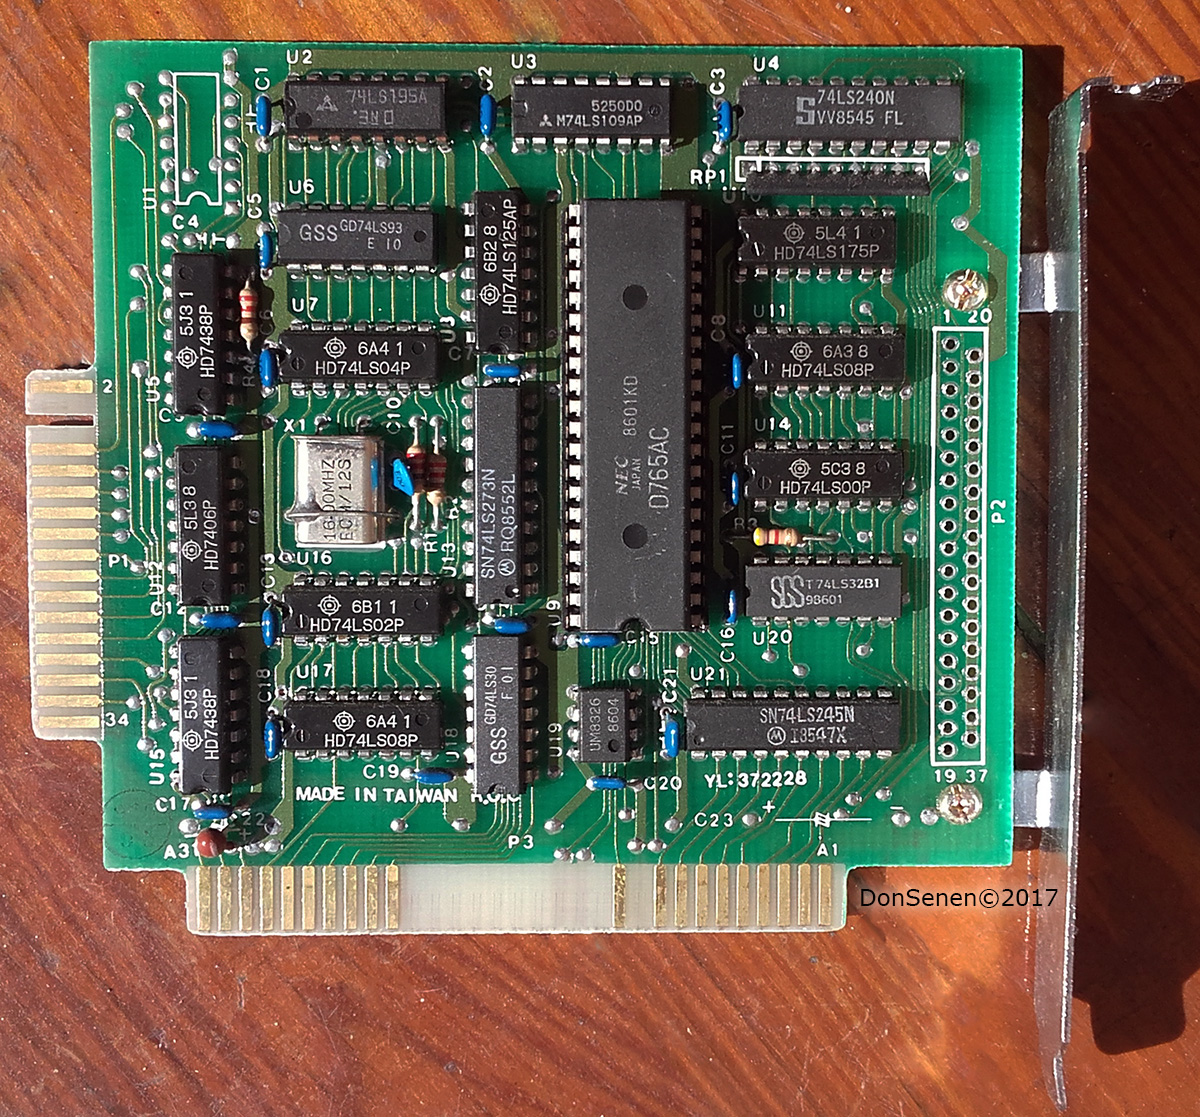 PC PCX PC88 XT 8088 1985